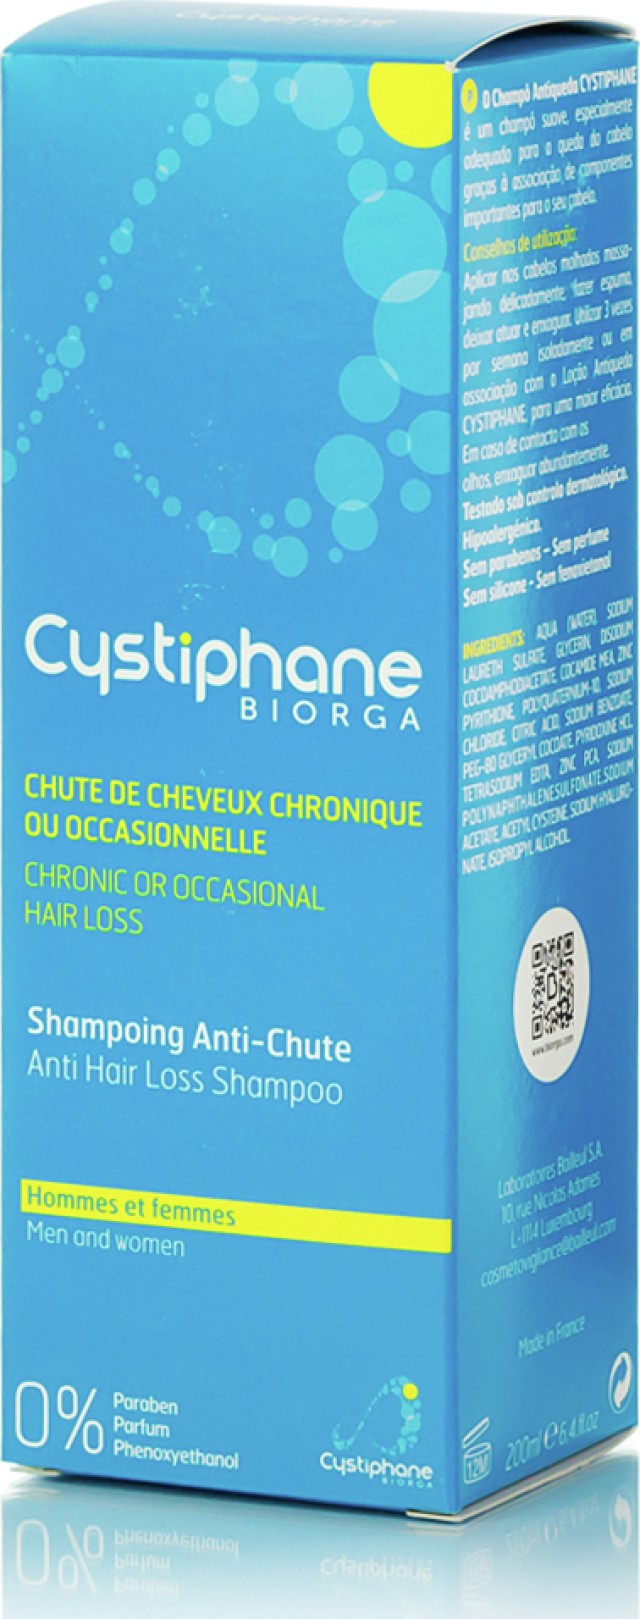 Biorga Cystiphane Shampoo Σαμπουάν Κατά της Τριχόπτωσης, 200ml